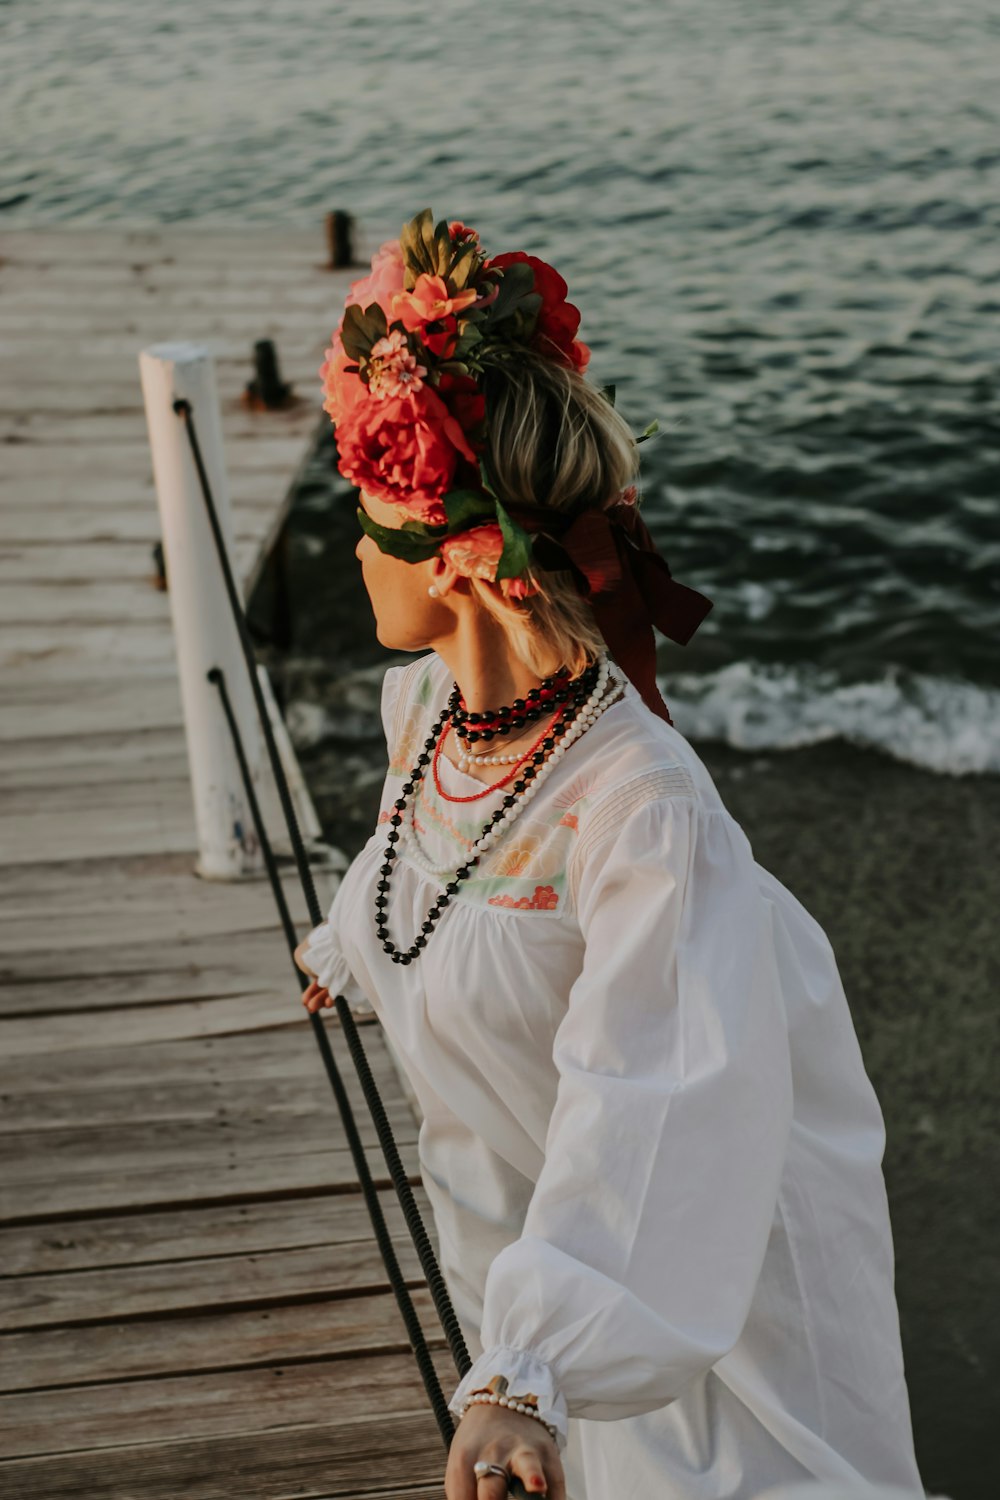 Una donna in piedi su un molo con un fiore tra i capelli